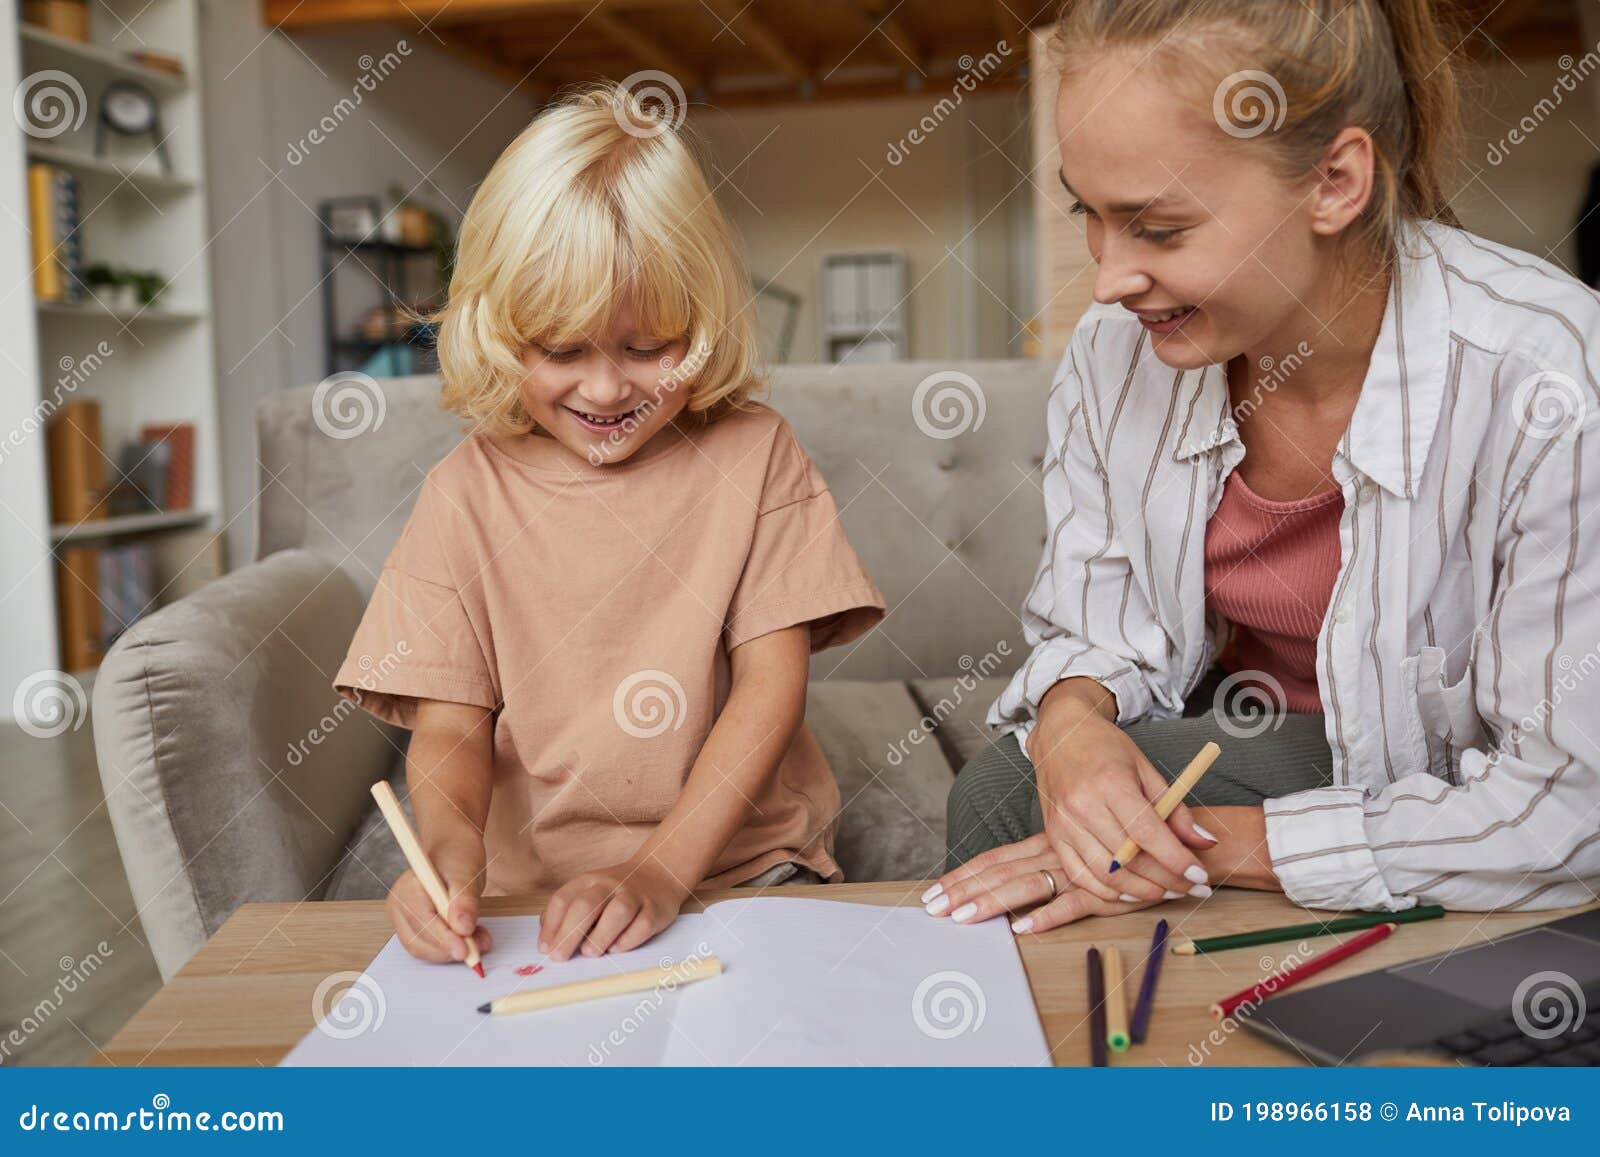 Mãe ensinando crianças na aula de desenho. Filha e filho pintando